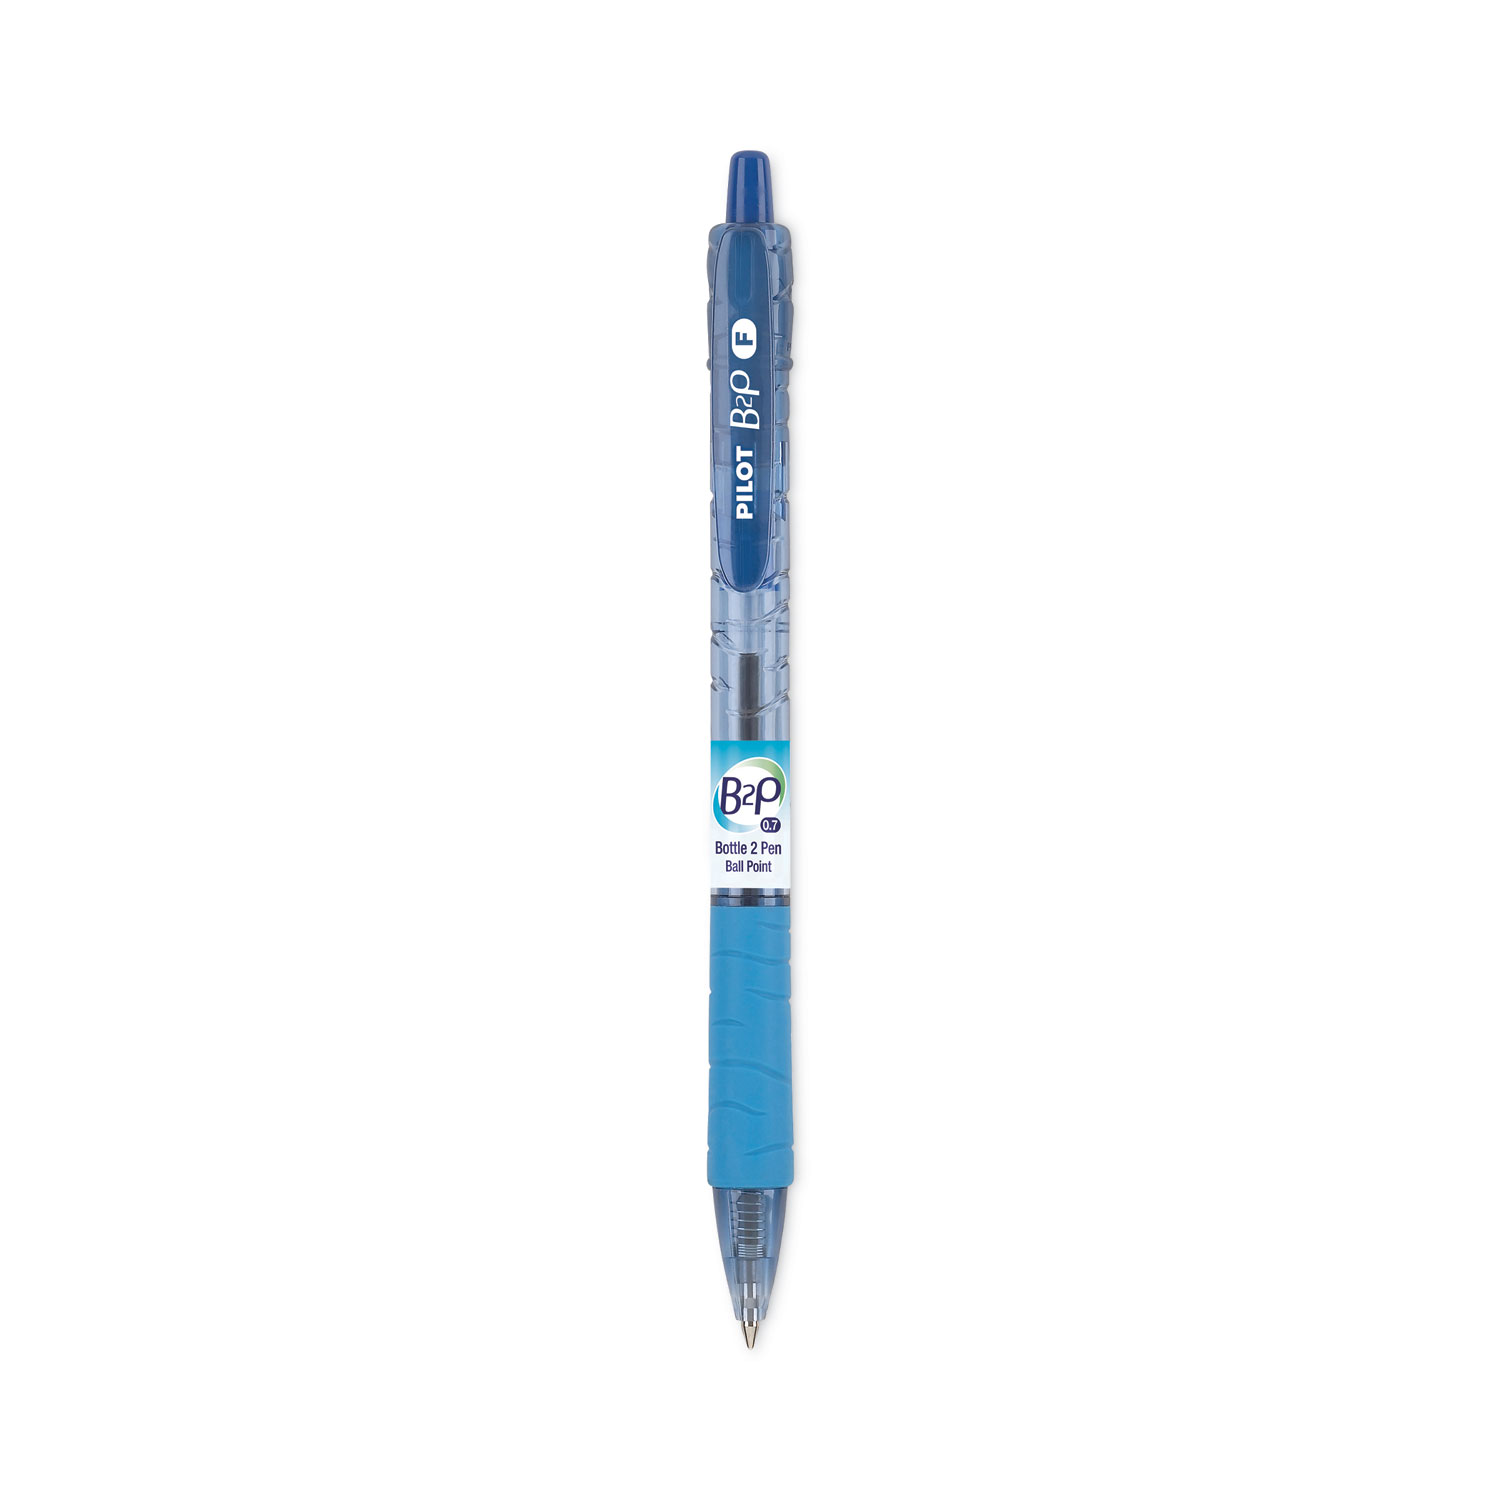 Pilot Better Ballpoint Pens Fine Point 0.7 mm Blue Barrel Blue Ink Pack Of  12 - Office Depot